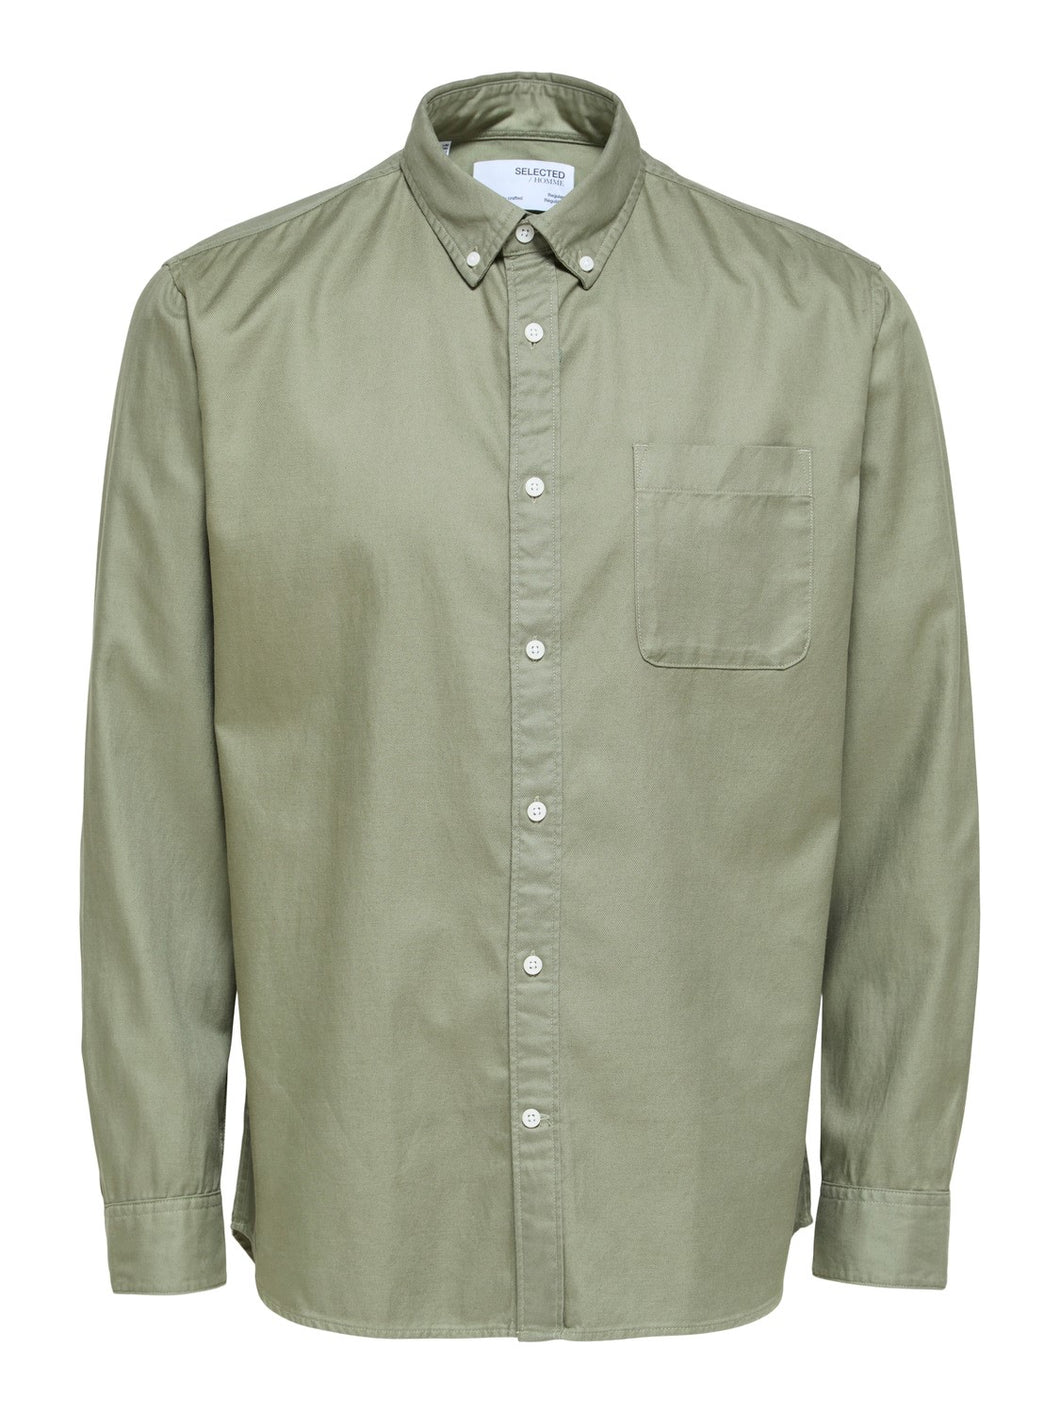 Selected Homme Sten Button Down Shirt Lichen Green